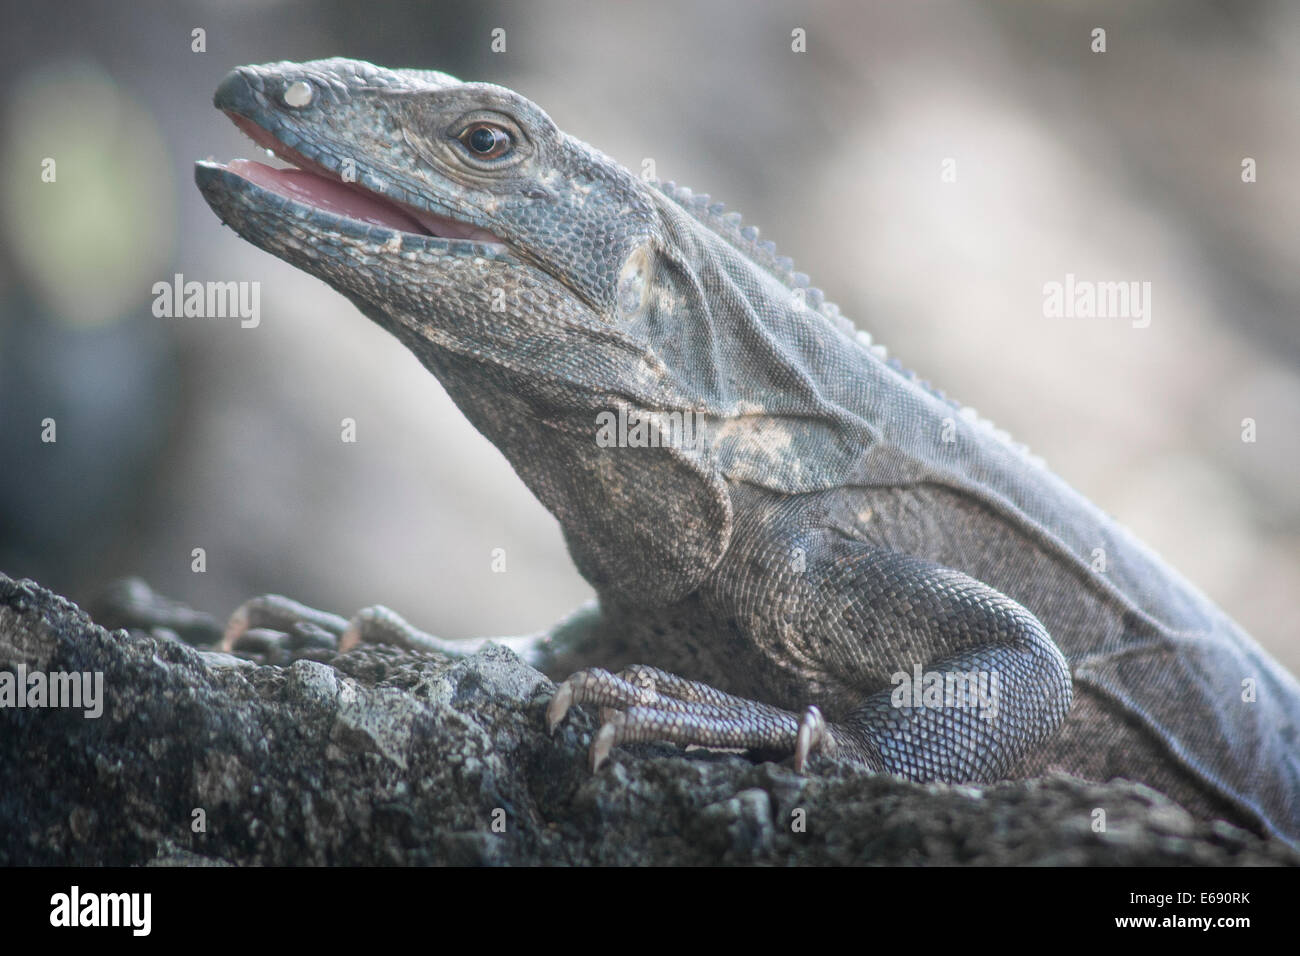 Black spiny-tailed iguana, Ctenosaura similis. Stock Photo